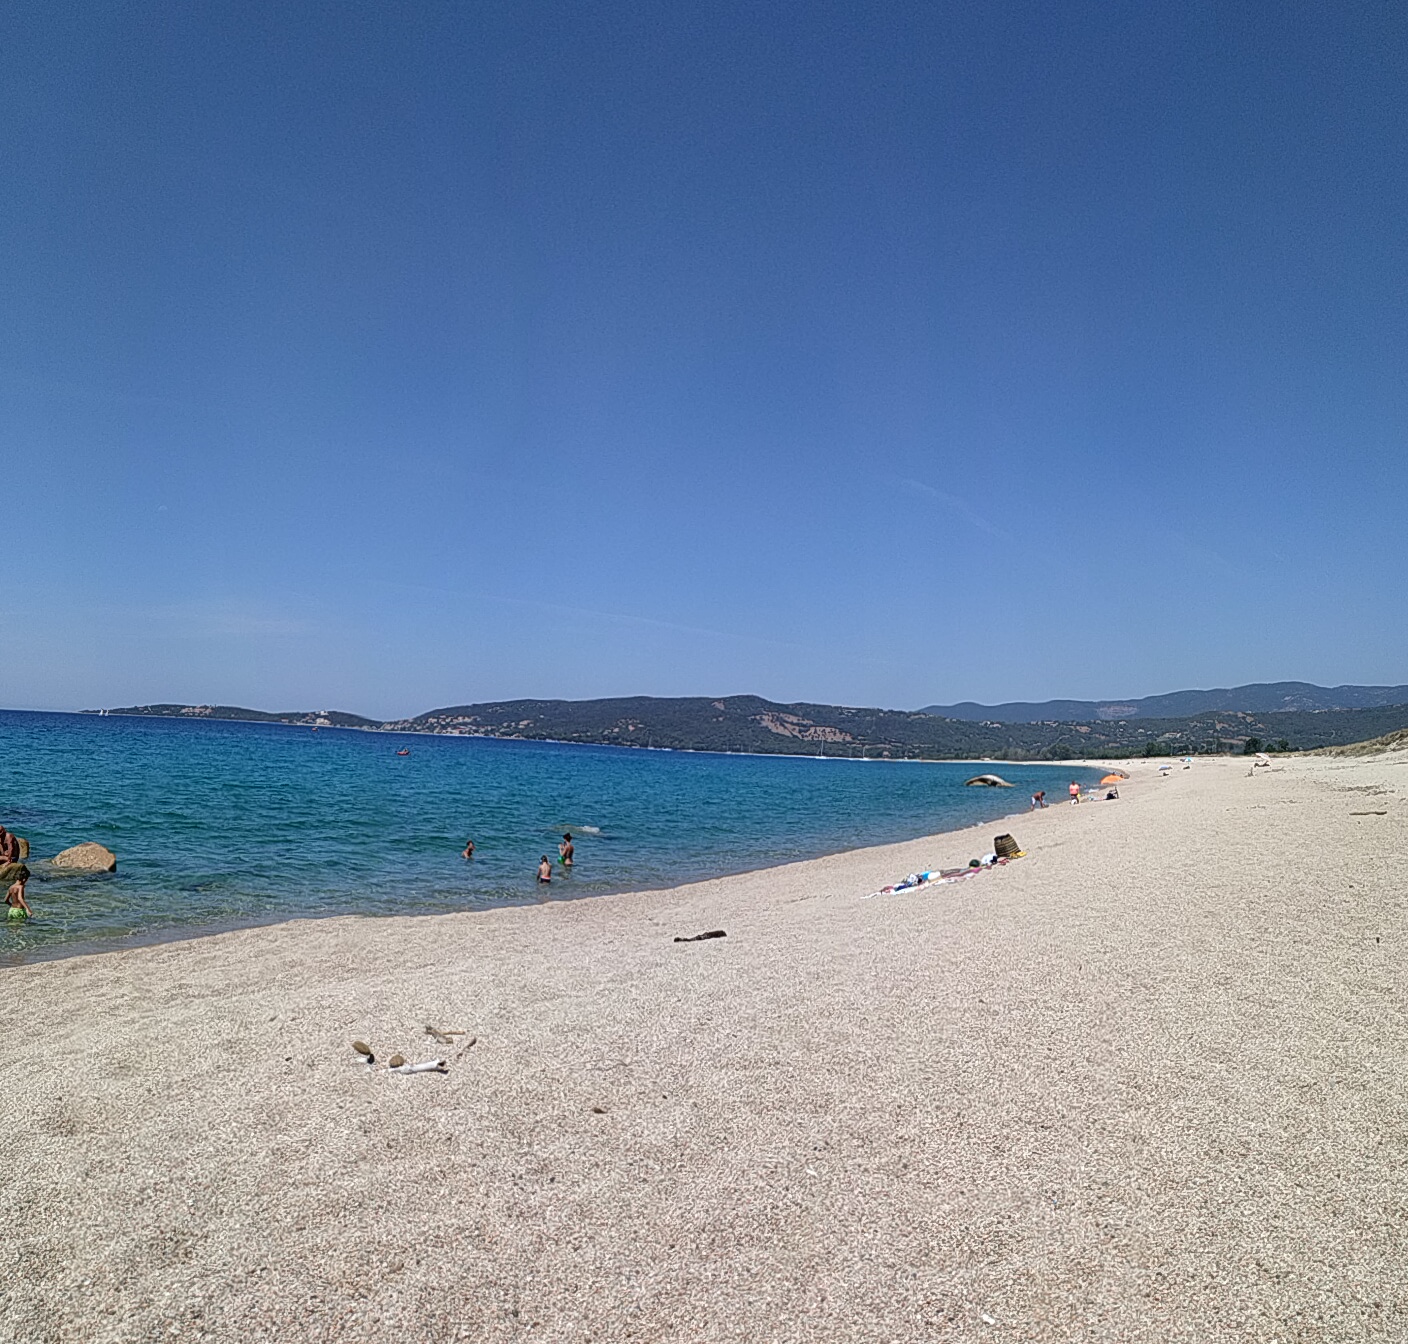 Zdjęcie Tenutella beach - popularne miejsce wśród znawców relaksu